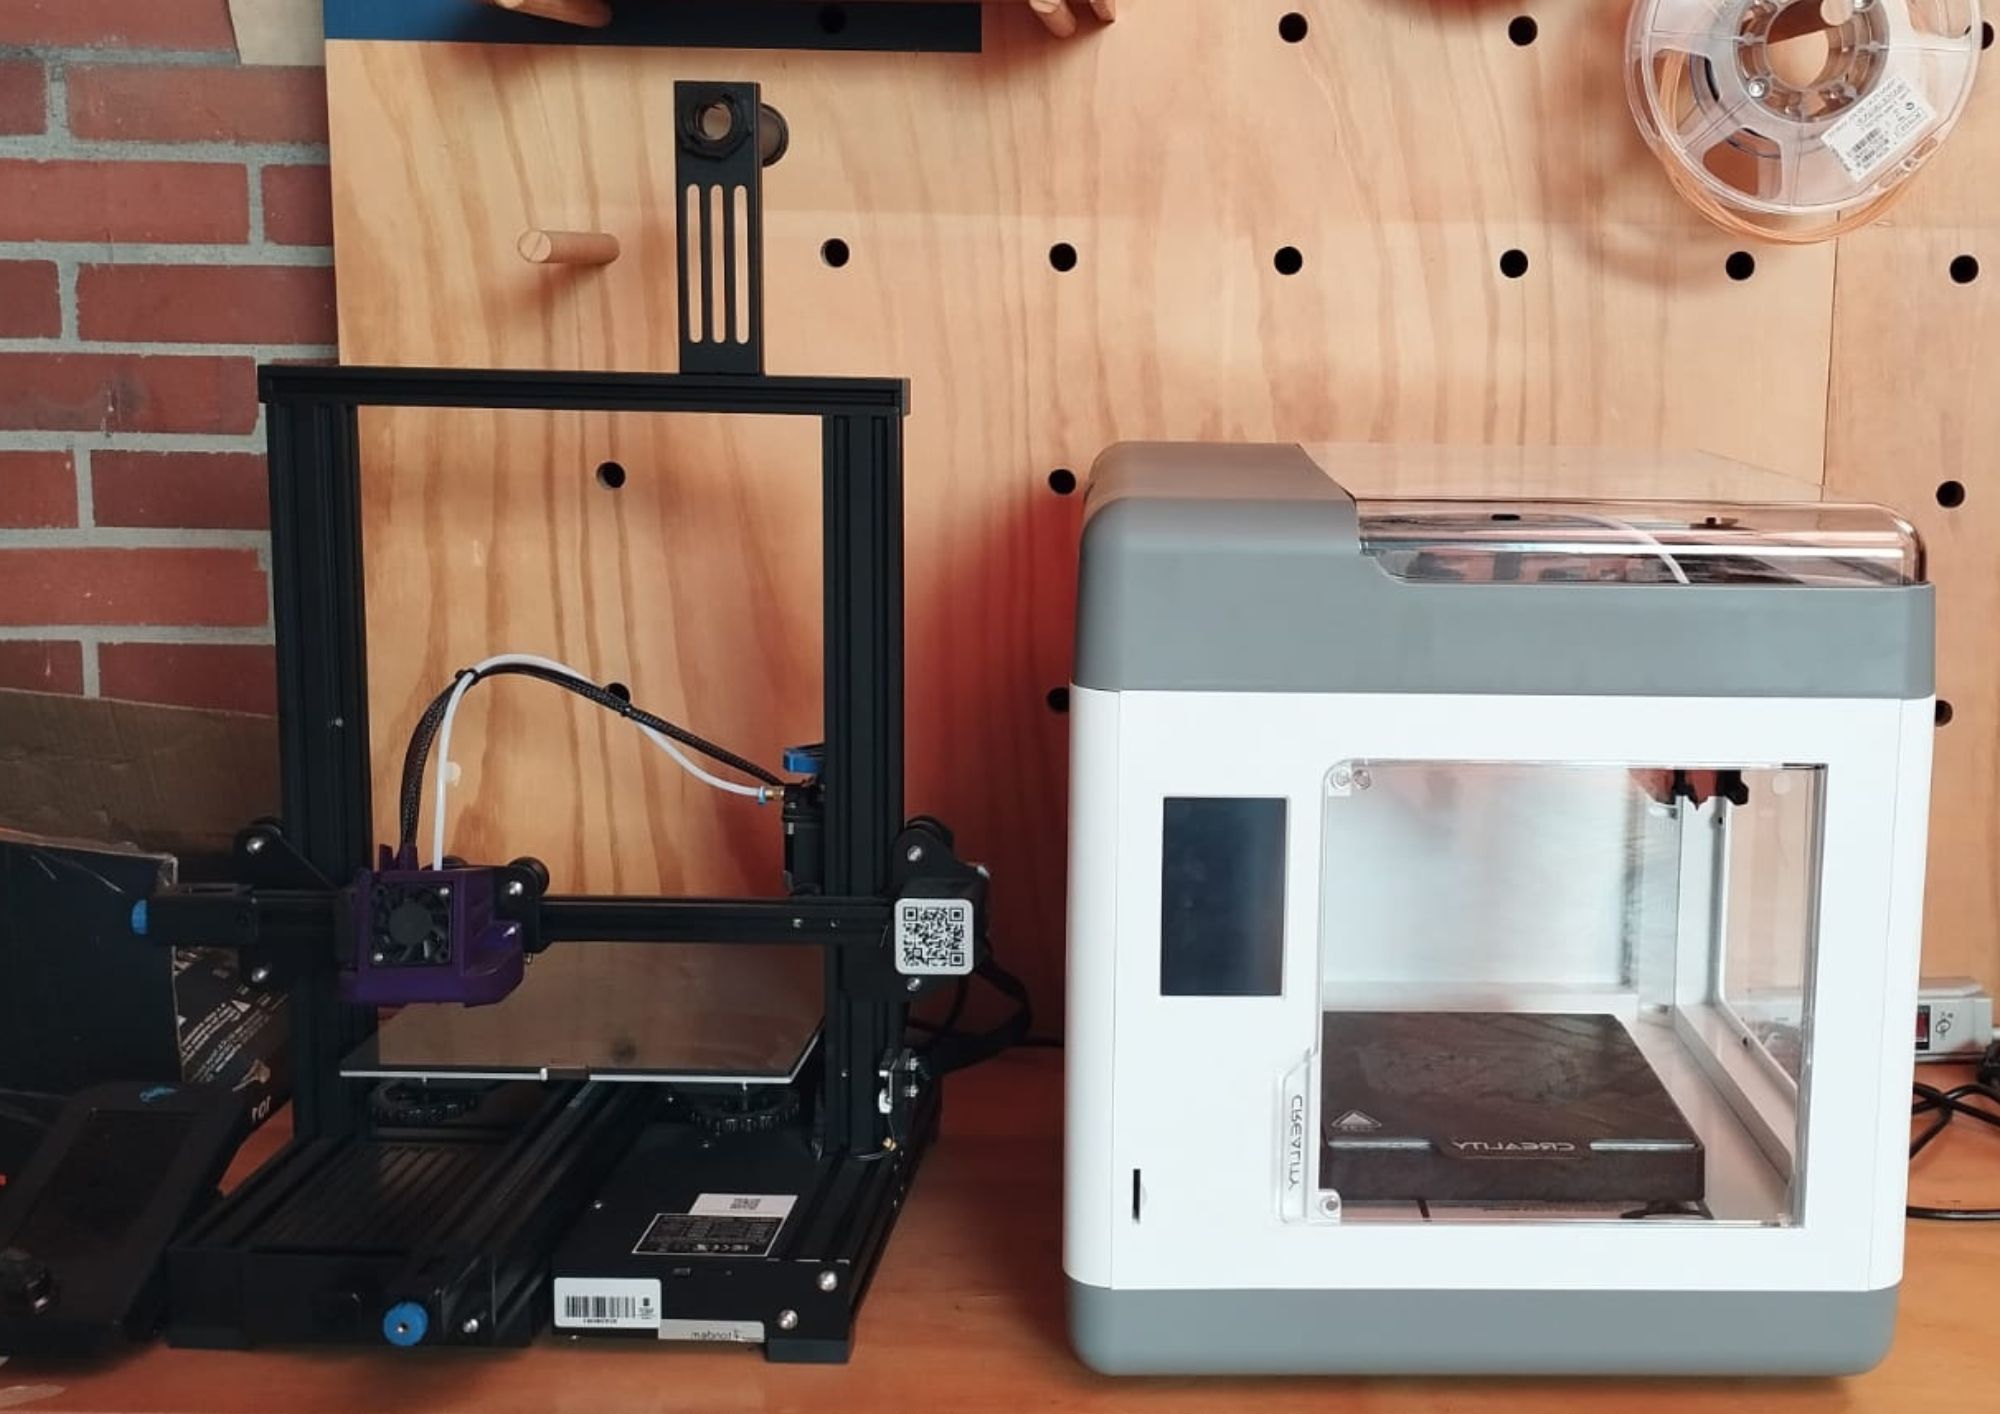 Aprenderemos las partes de la impresora 3D, el proceso de calibración de la impresora, manejo básico de la misma